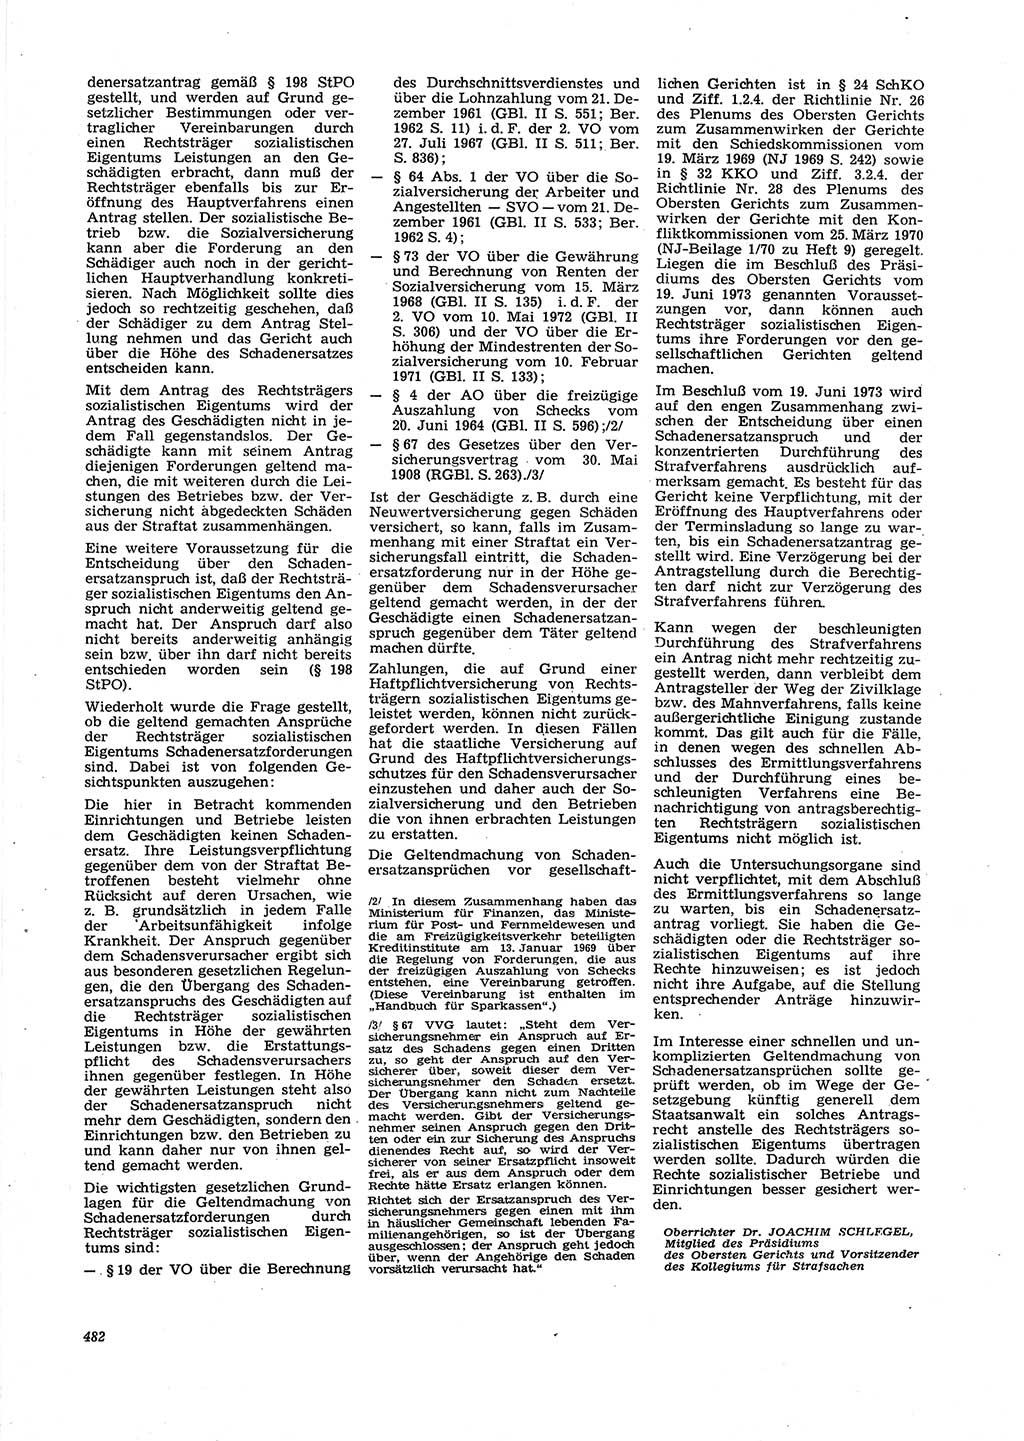 Neue Justiz (NJ), Zeitschrift für Recht und Rechtswissenschaft [Deutsche Demokratische Republik (DDR)], 27. Jahrgang 1973, Seite 482 (NJ DDR 1973, S. 482)